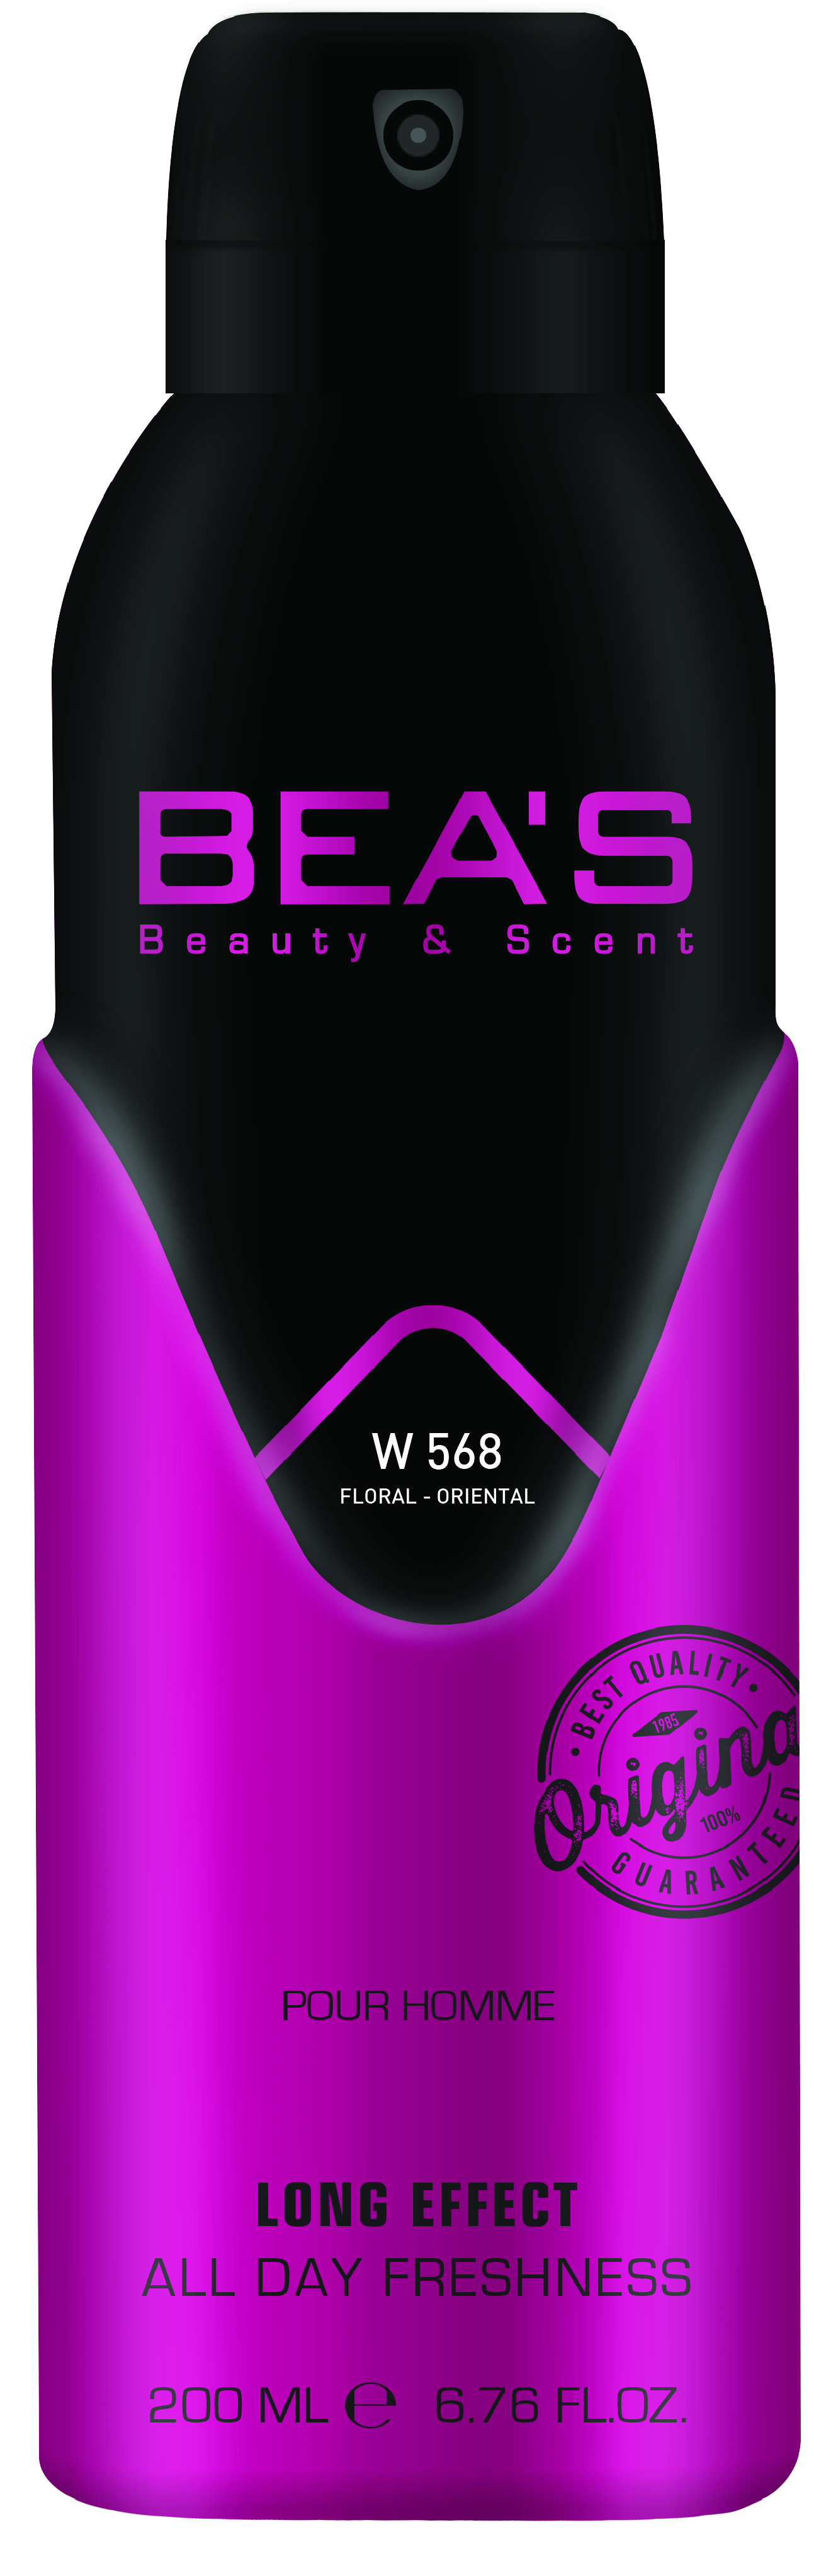 Купить Парфюмированный дезодорант Beas PR Olympea Women 200 мл W 568, Номерная парфюмерия